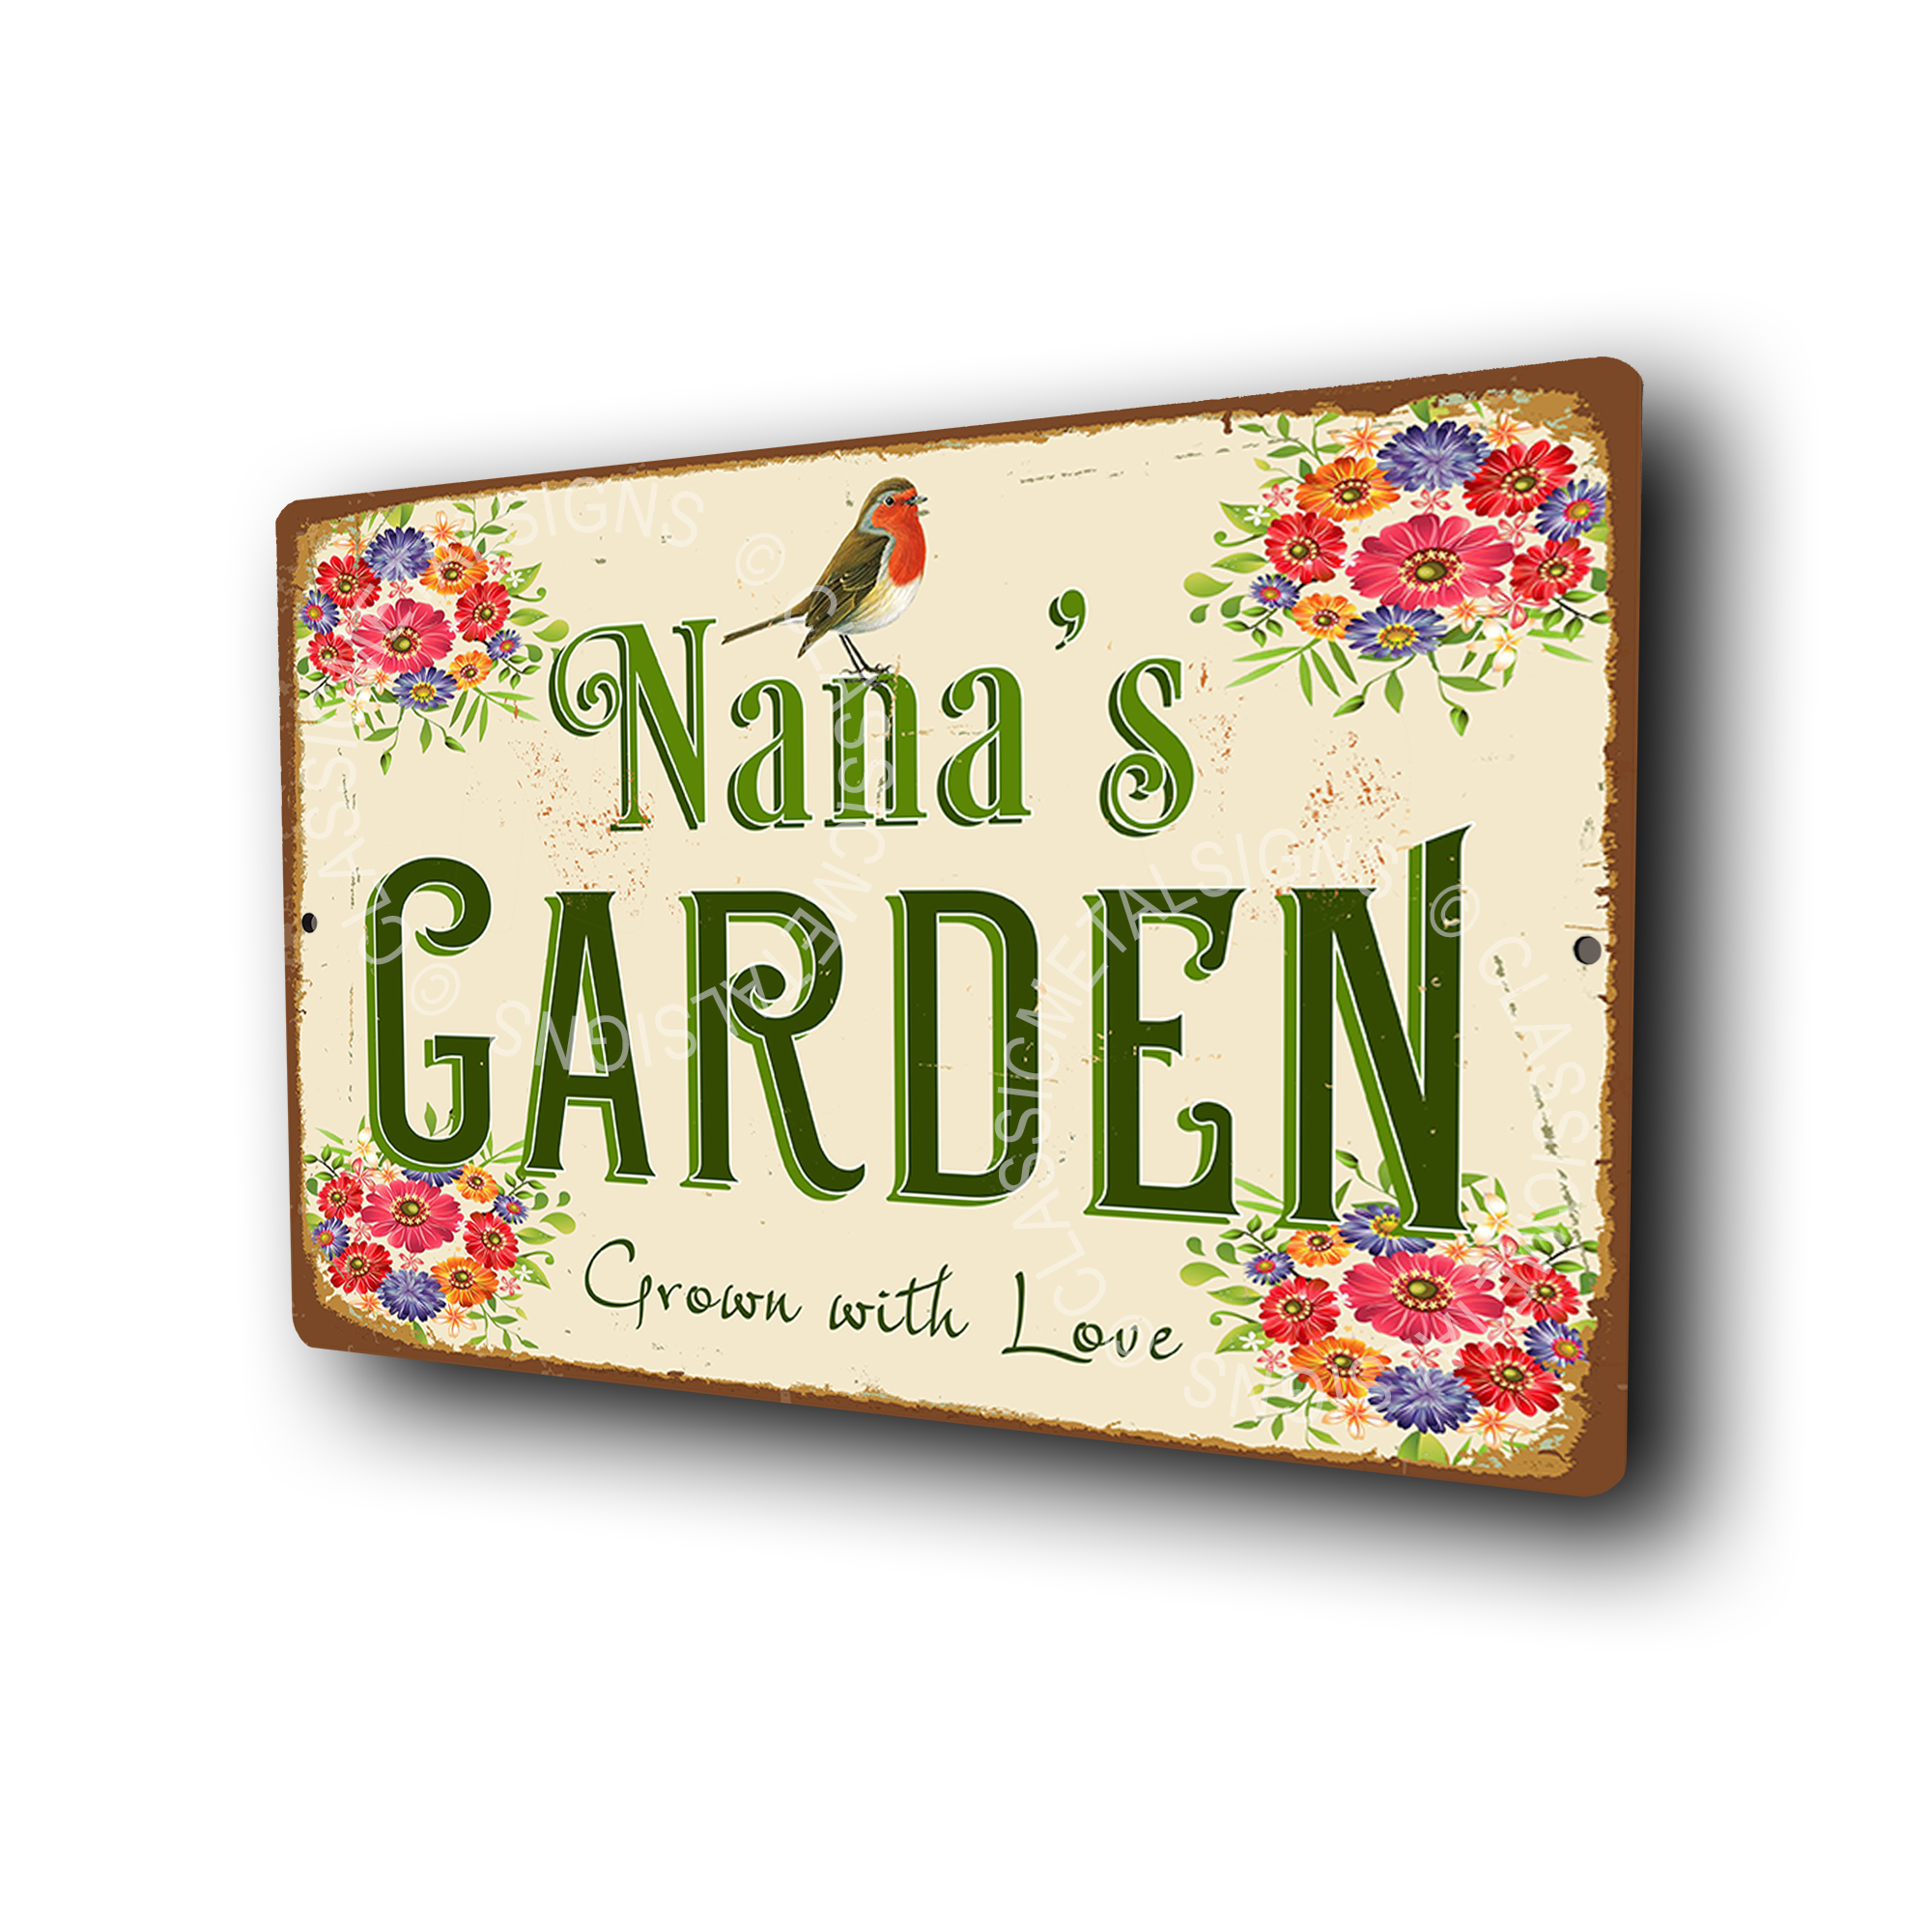 Nana's Garden Sign